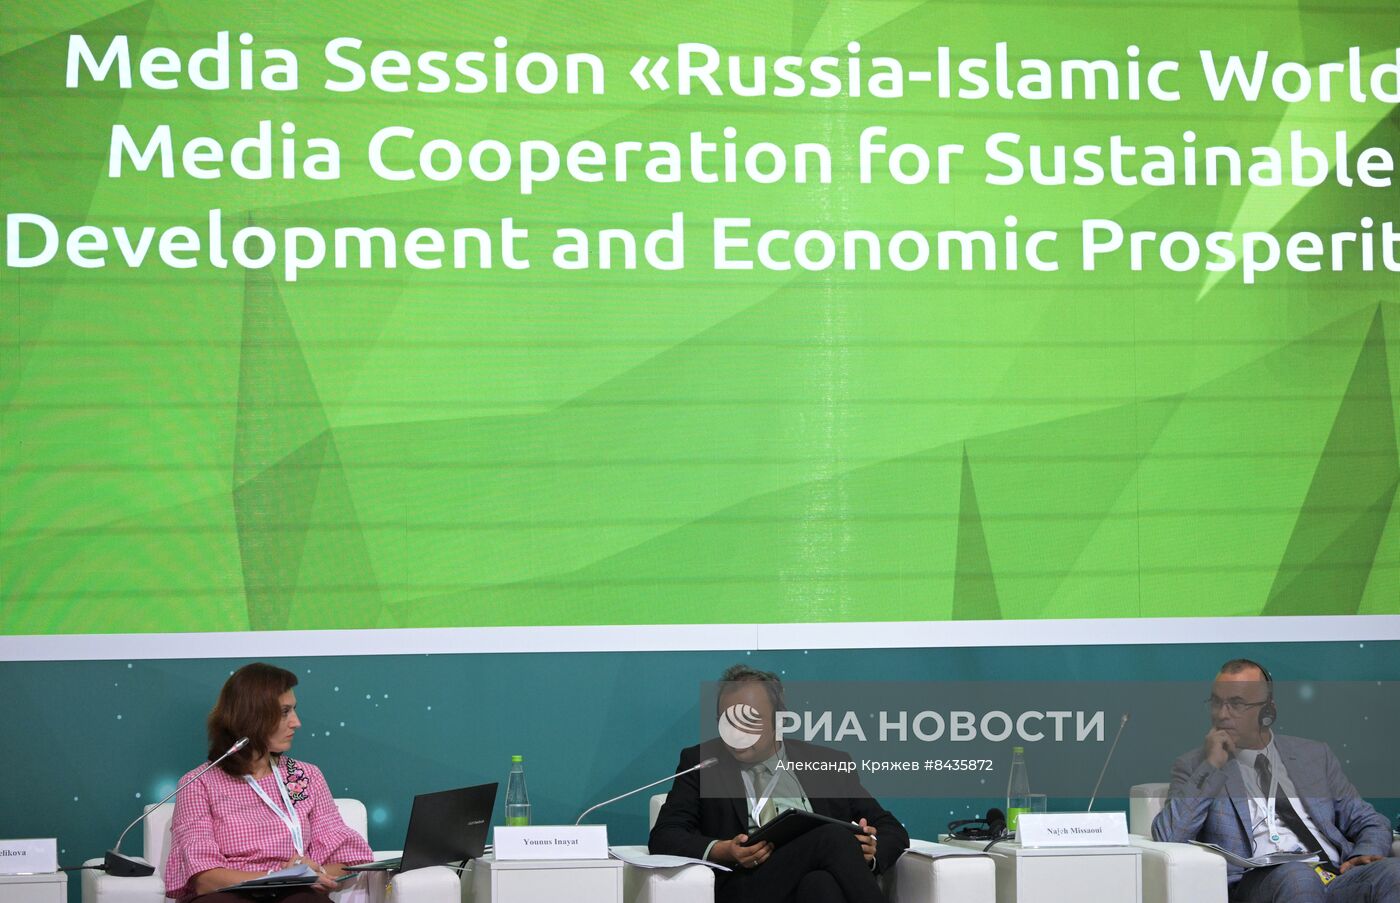 KAZANFORUM 2023. Россия - Исламский мир: медиасотрудничество для устойчивого развития и экономического процветания